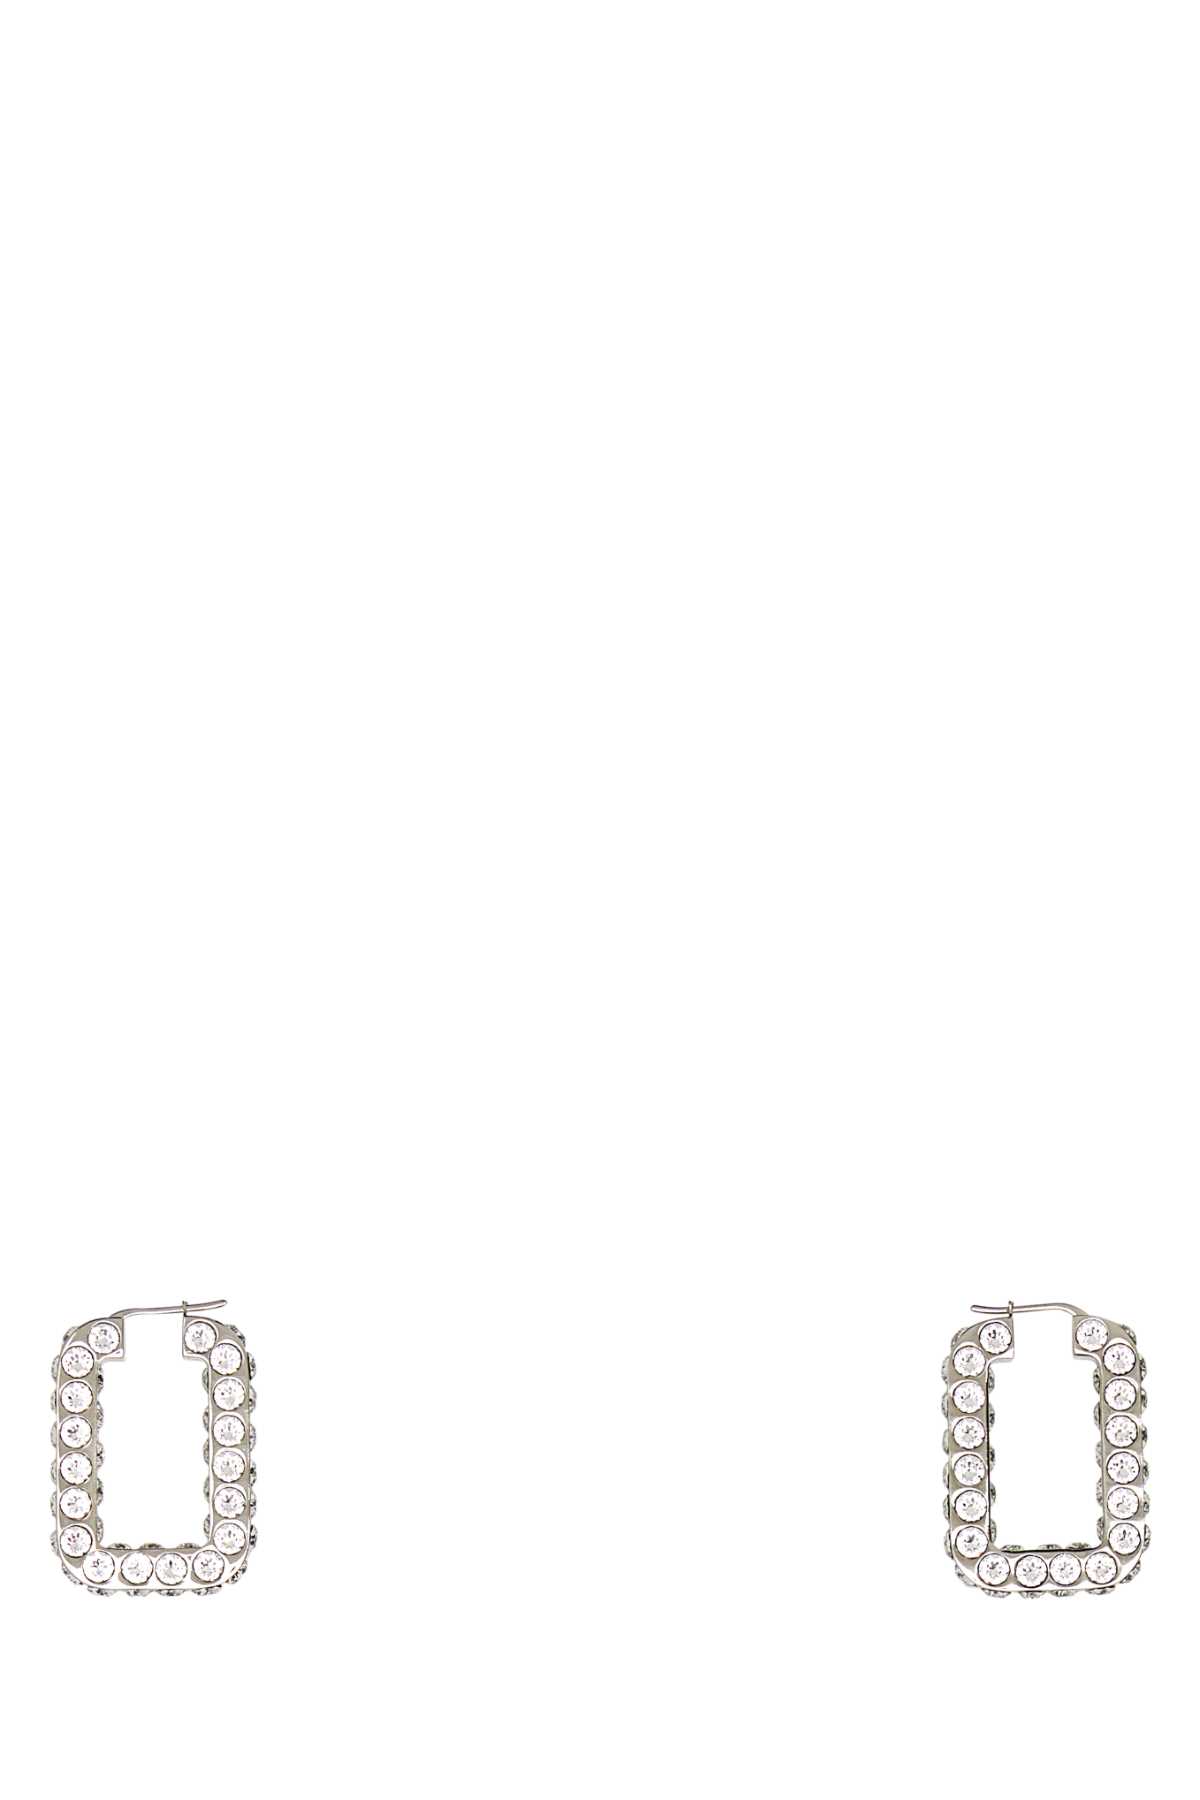 Amina Muaddi Embellished Metal Charlotte Earrings